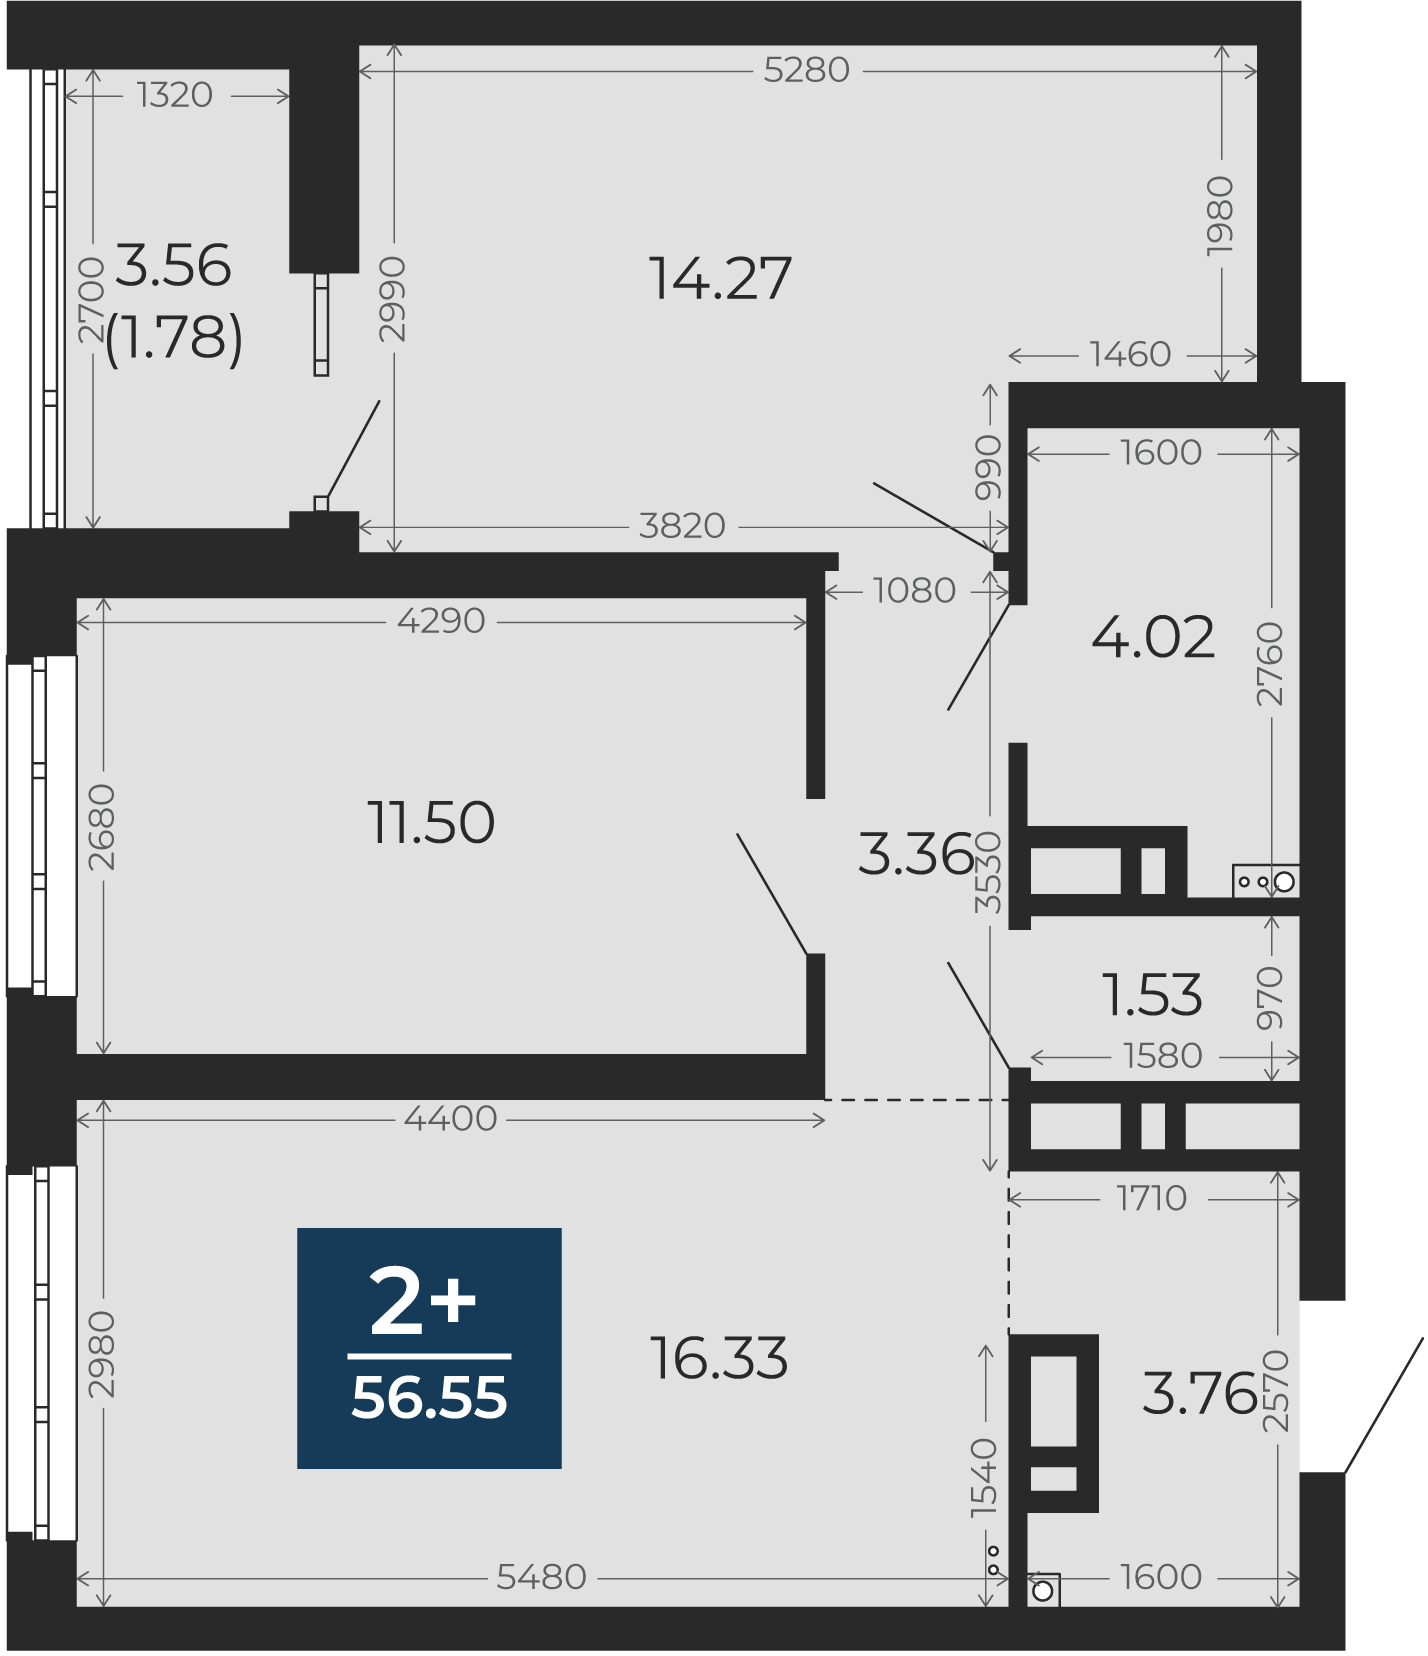 Квартира № 163, 2-комнатная, 56.55 кв. м, 9 этаж